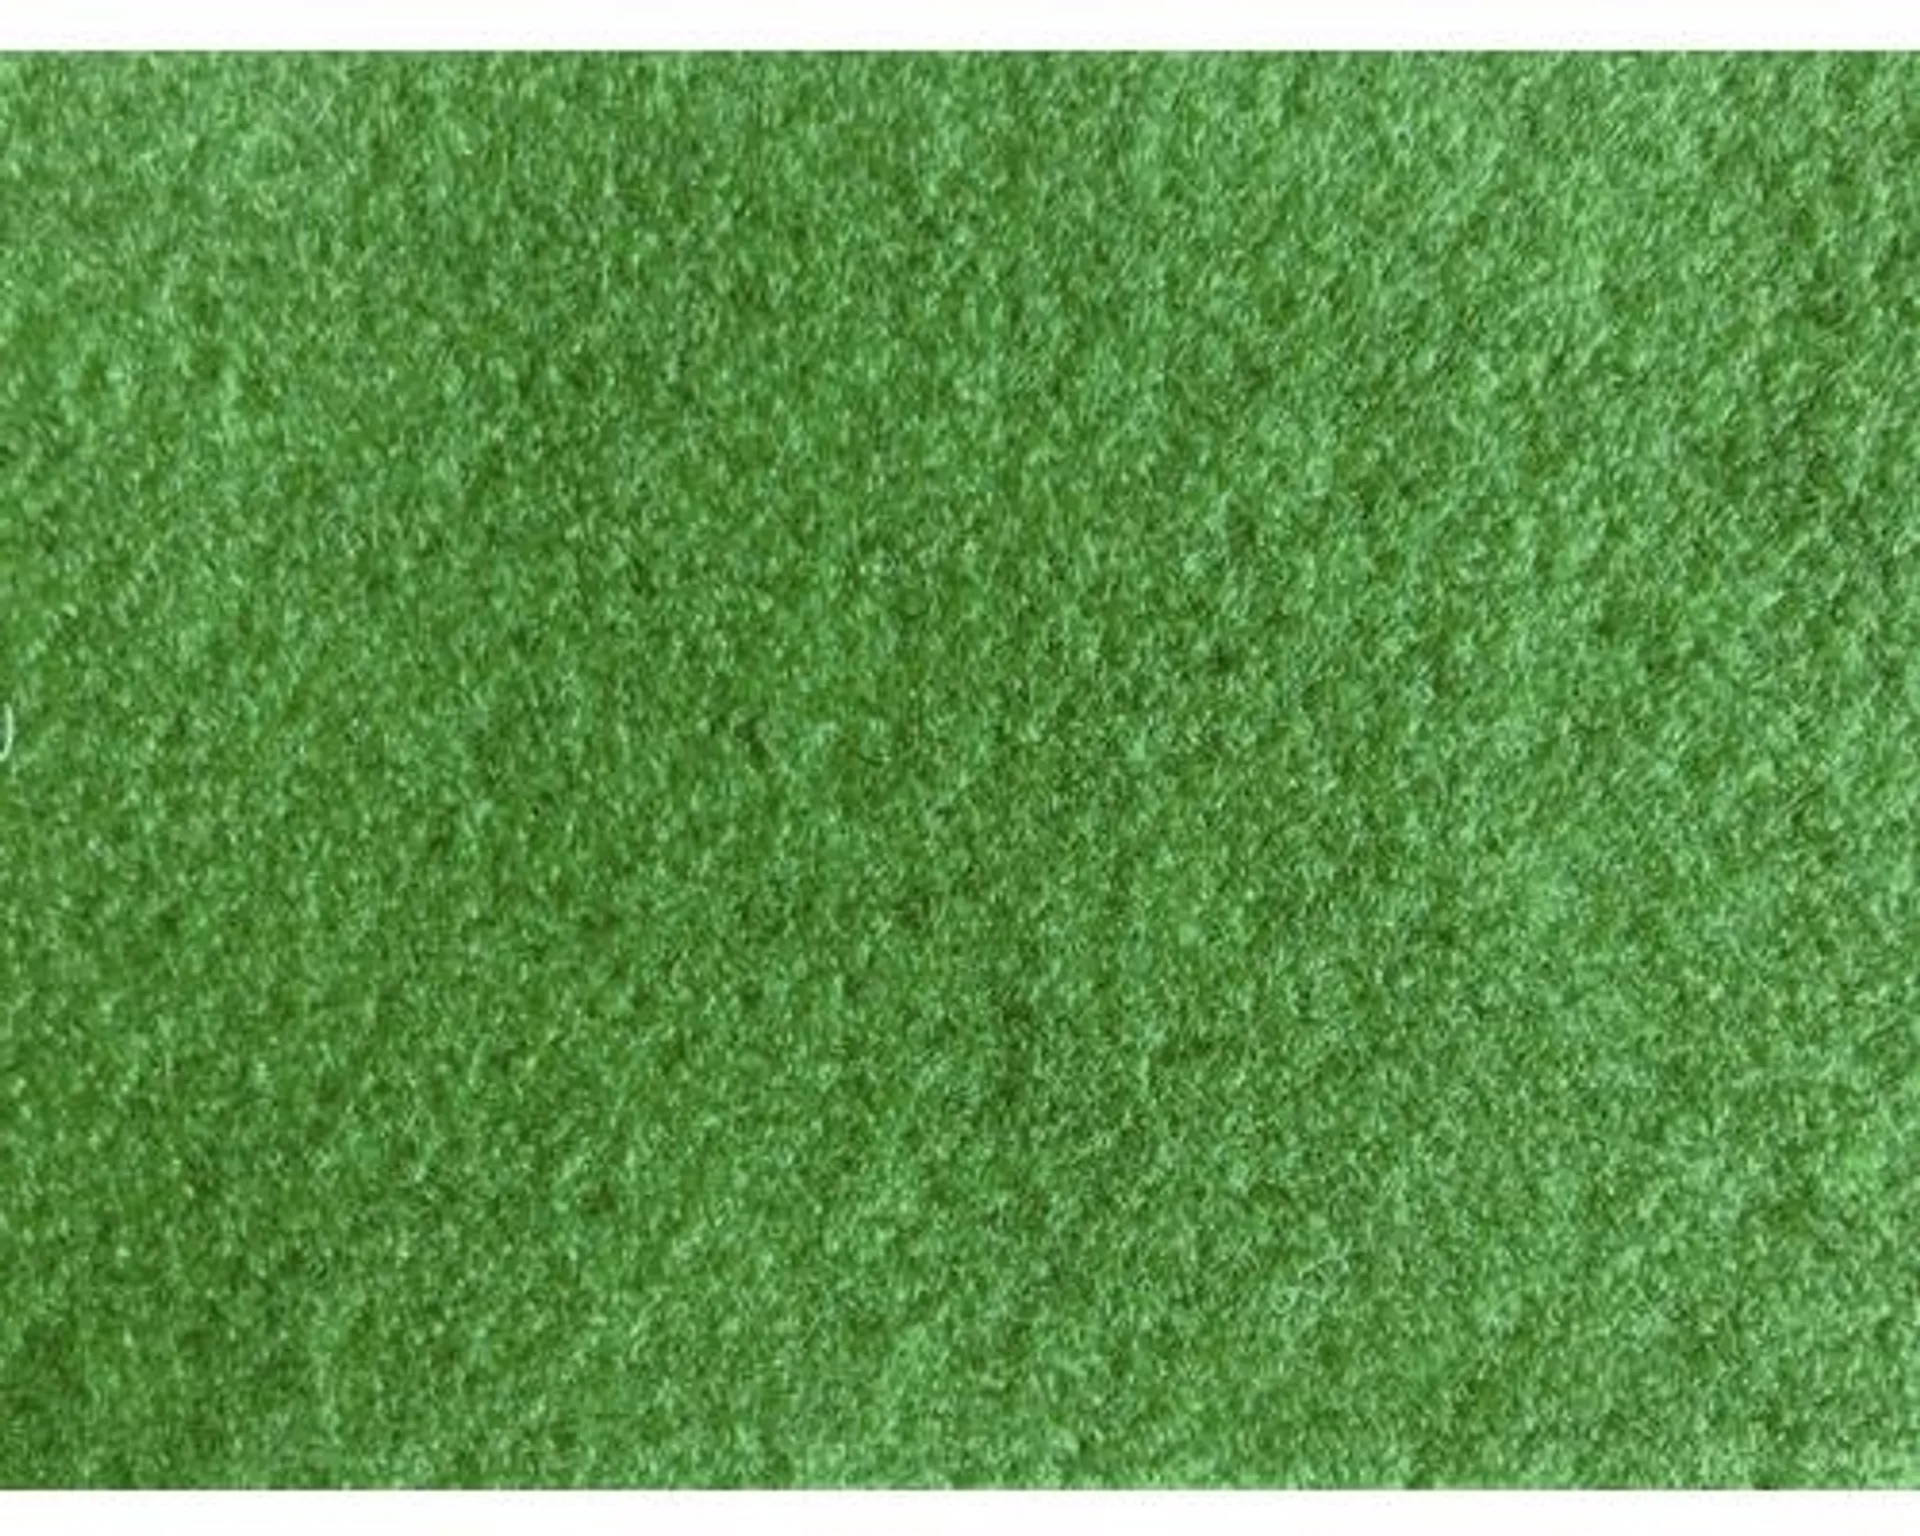 Umelý trávnik Sporting precoat zelený šírka 133 cm (metráž)